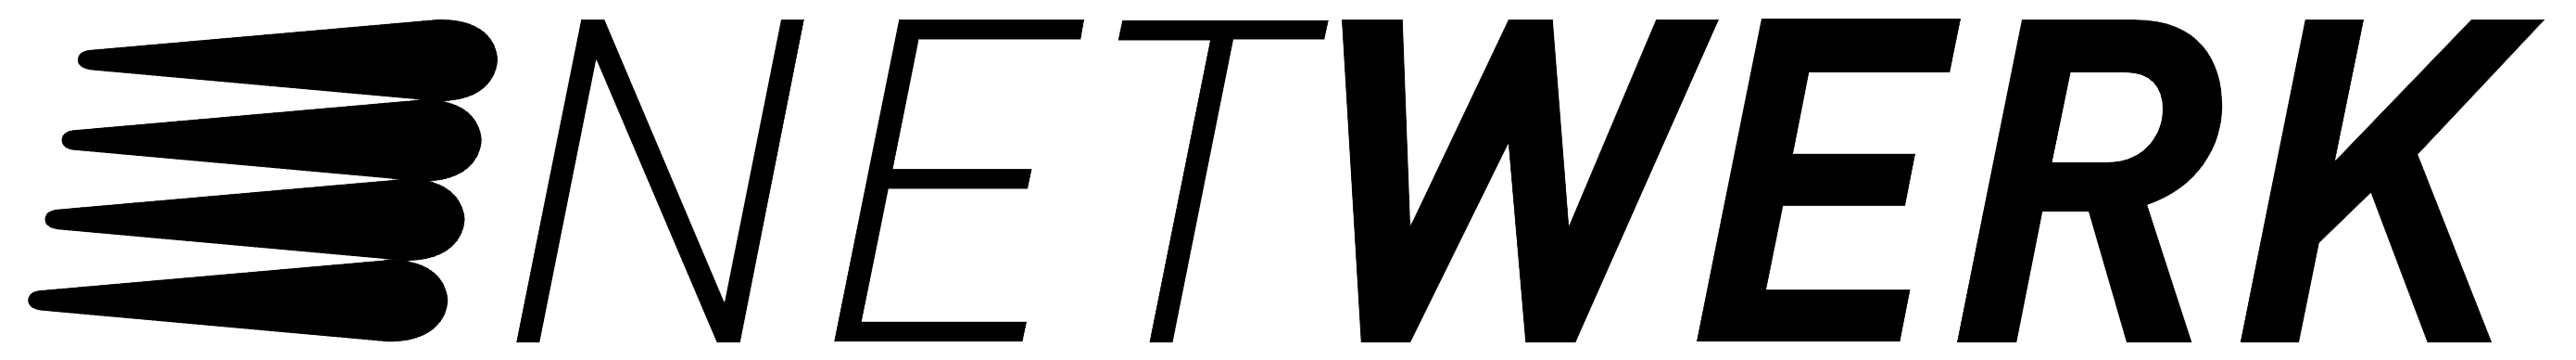 Logo van Netwerk